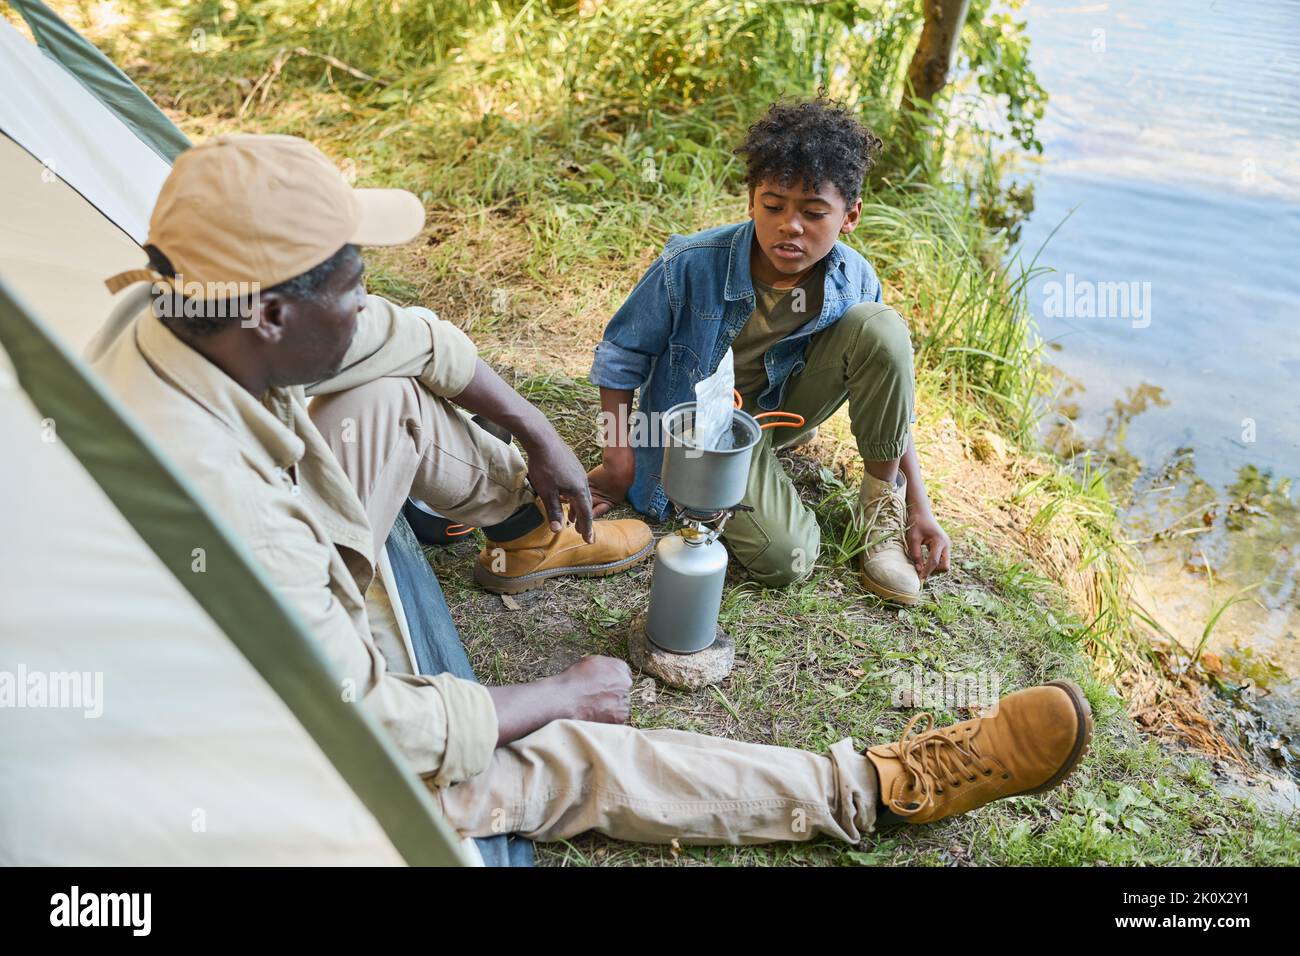 Jugendlicher afroamerikanischer Junge in Casualwear, der mit seinem Großvater spricht, während er am Wasser sitzt und darauf wartet, dass das Essen gekocht wird Stockfoto